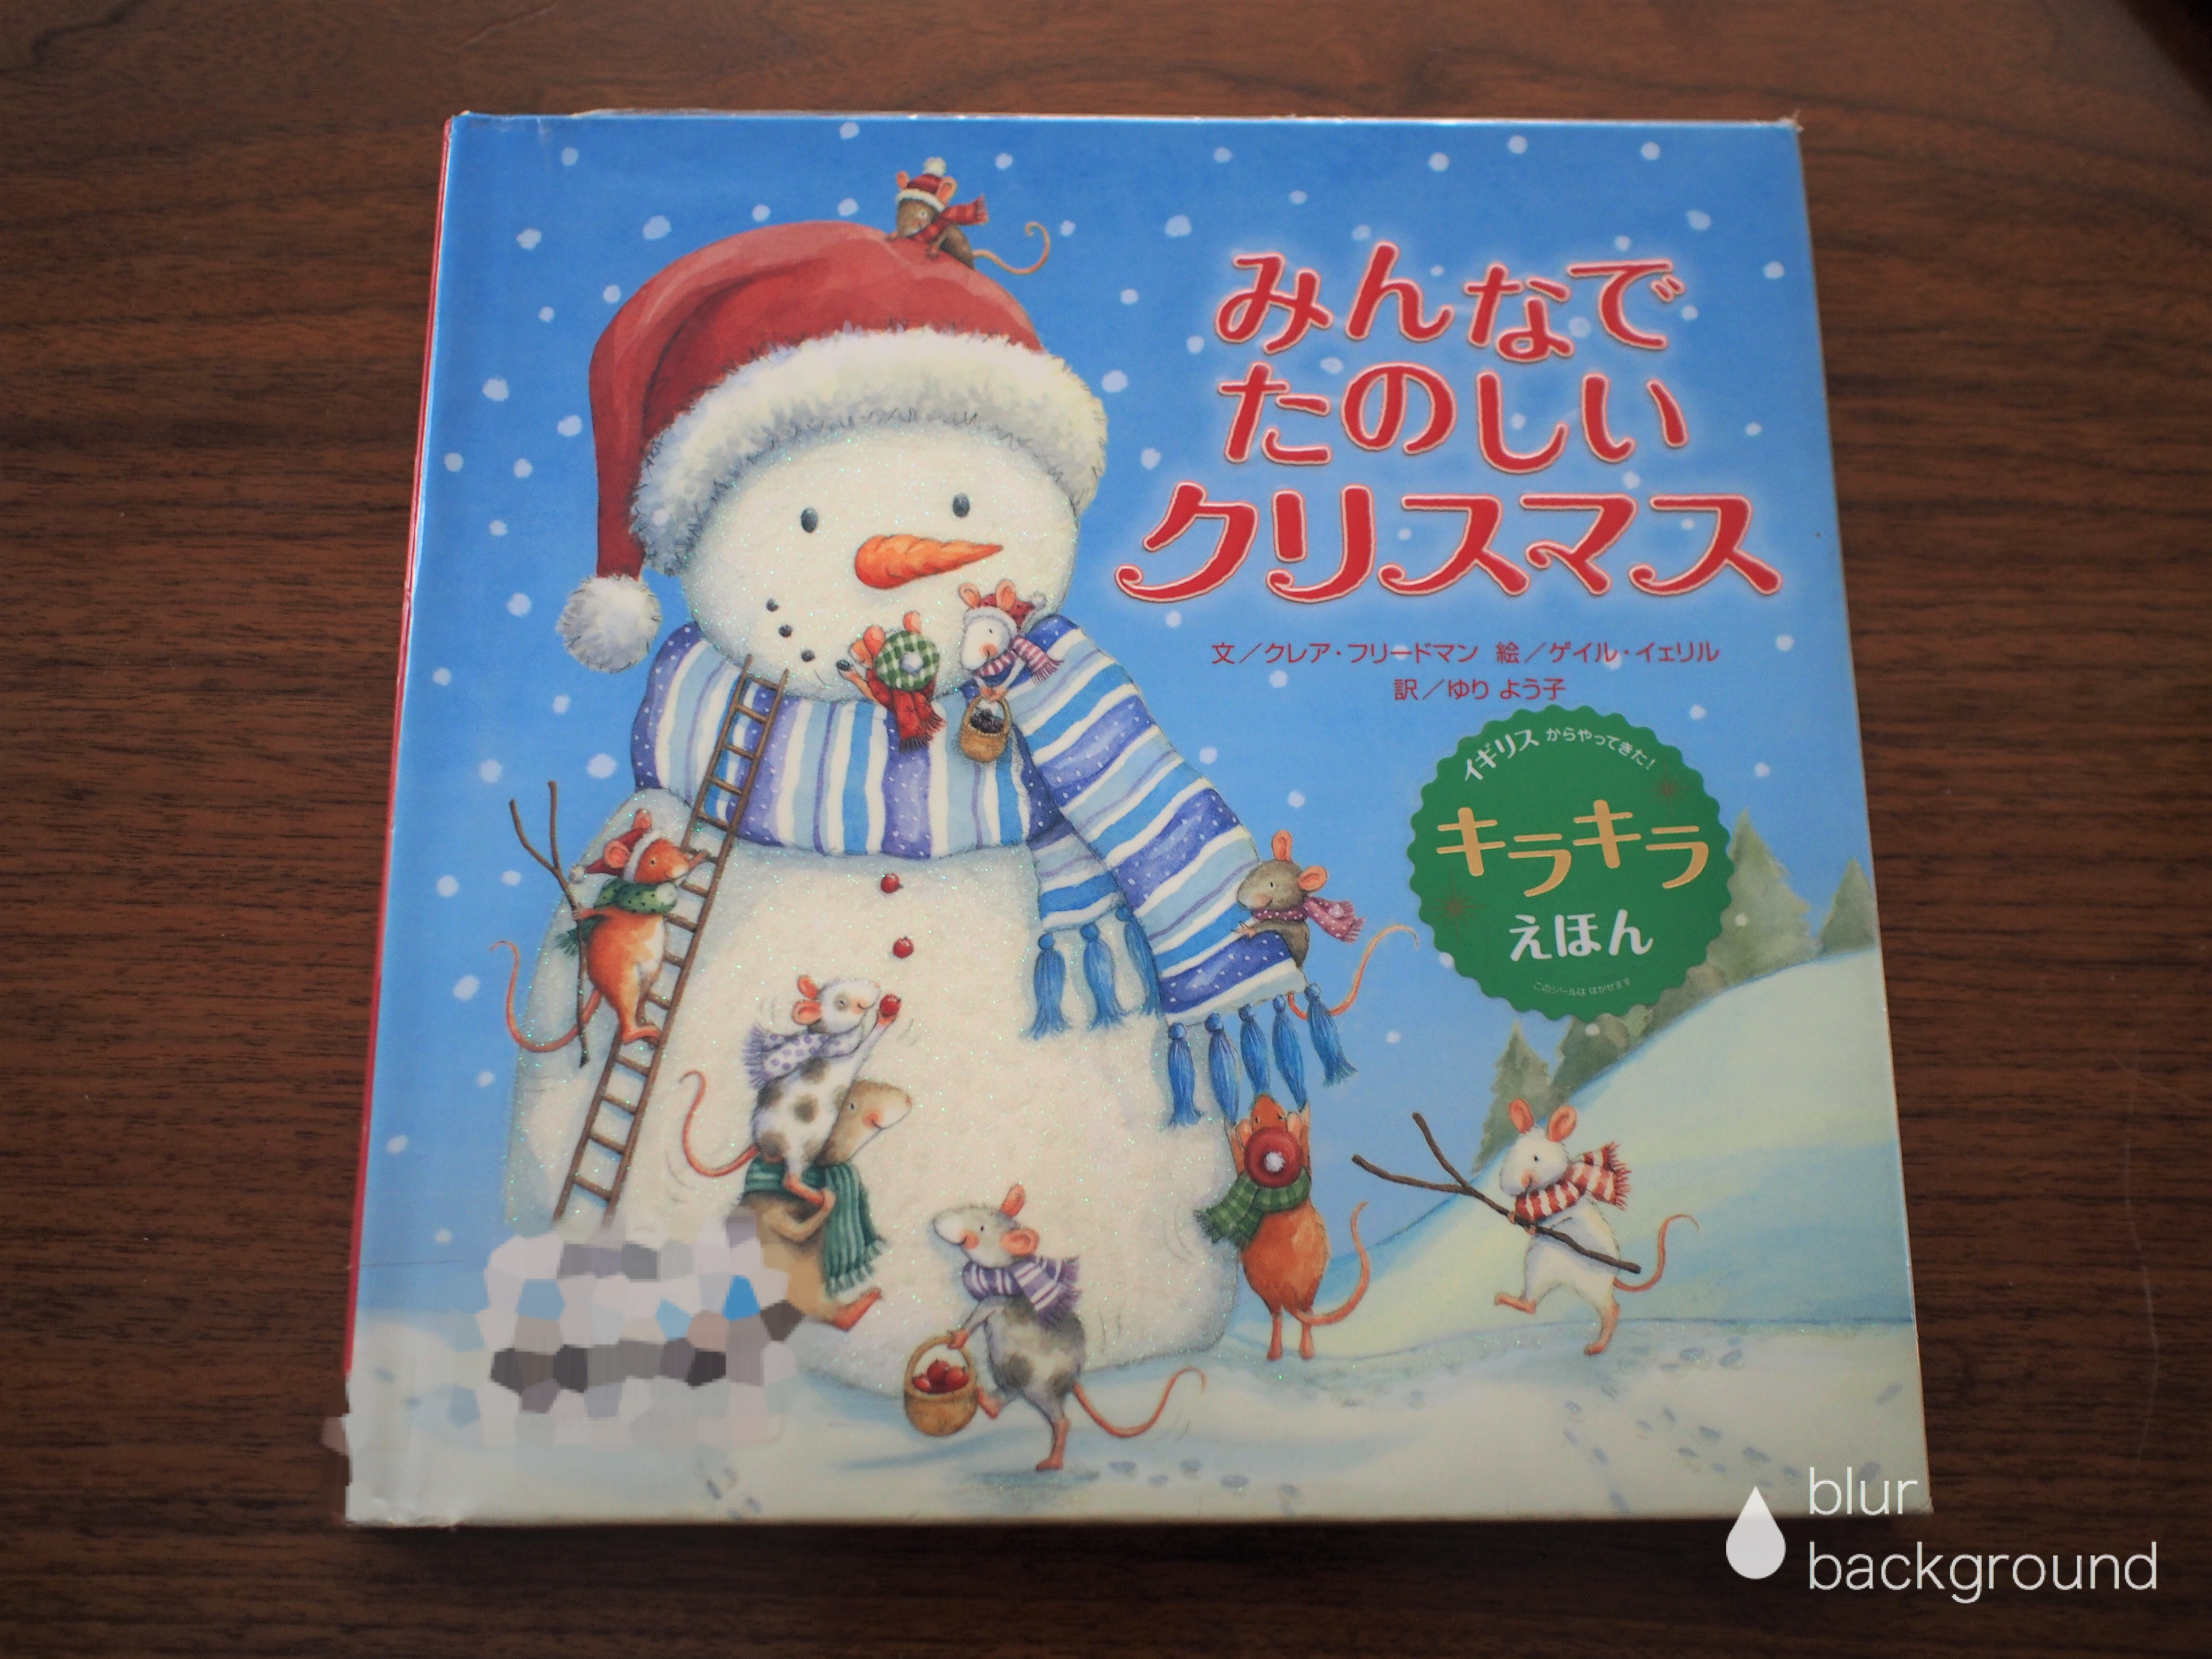 キラキラ絵本「みんなでたのしいクリスマス」